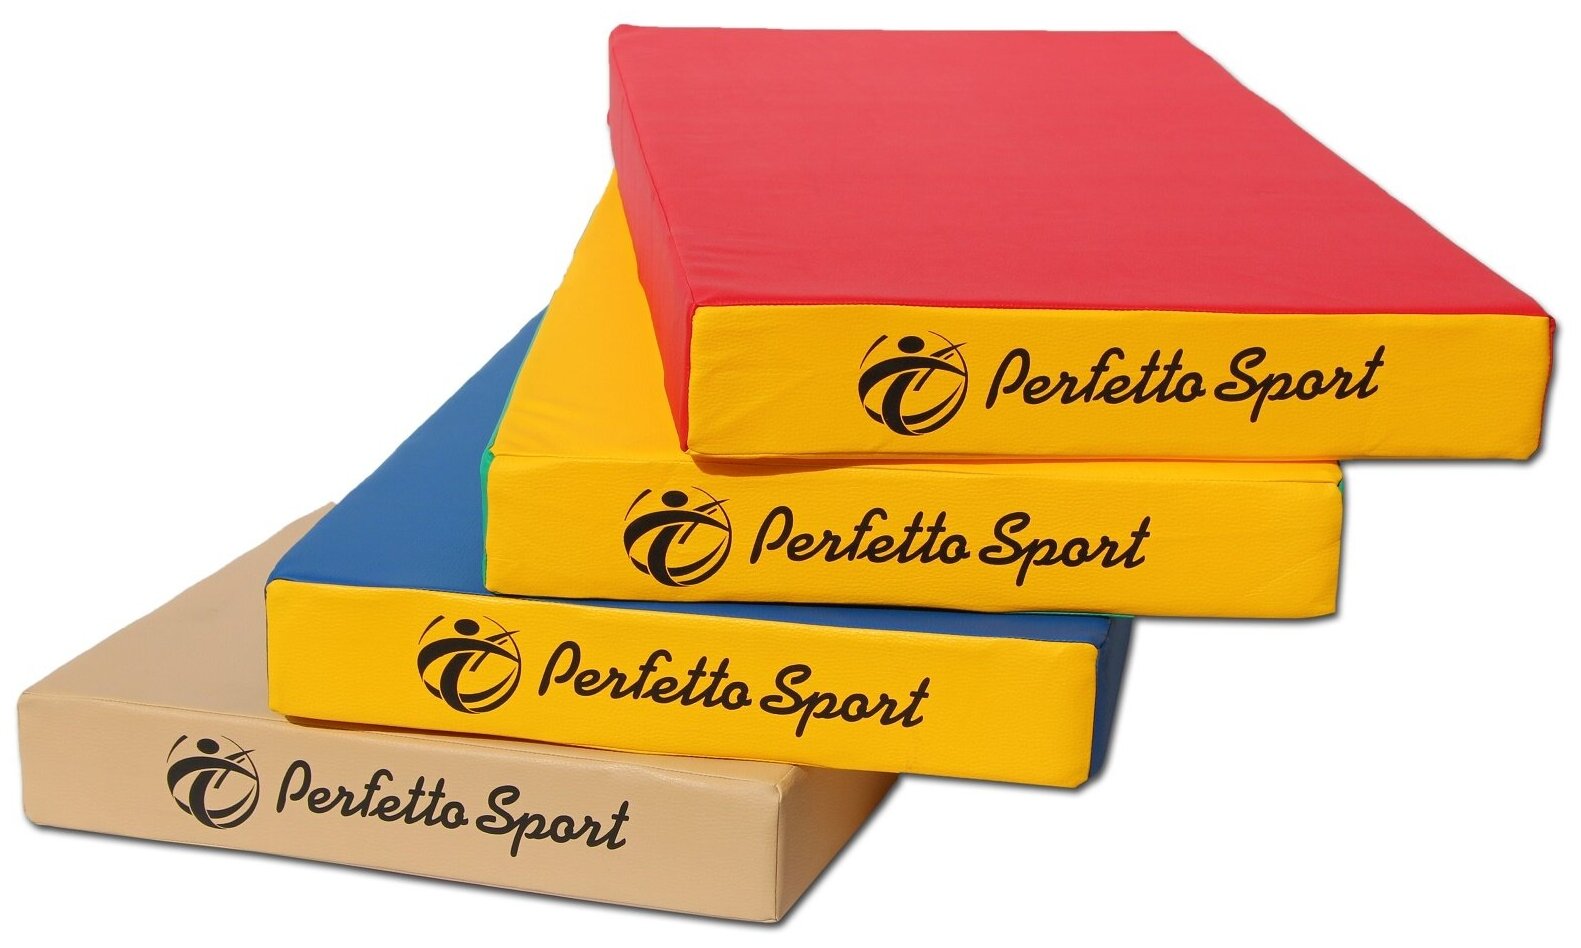   Perfetto Sport  1 (100  50  10) / .